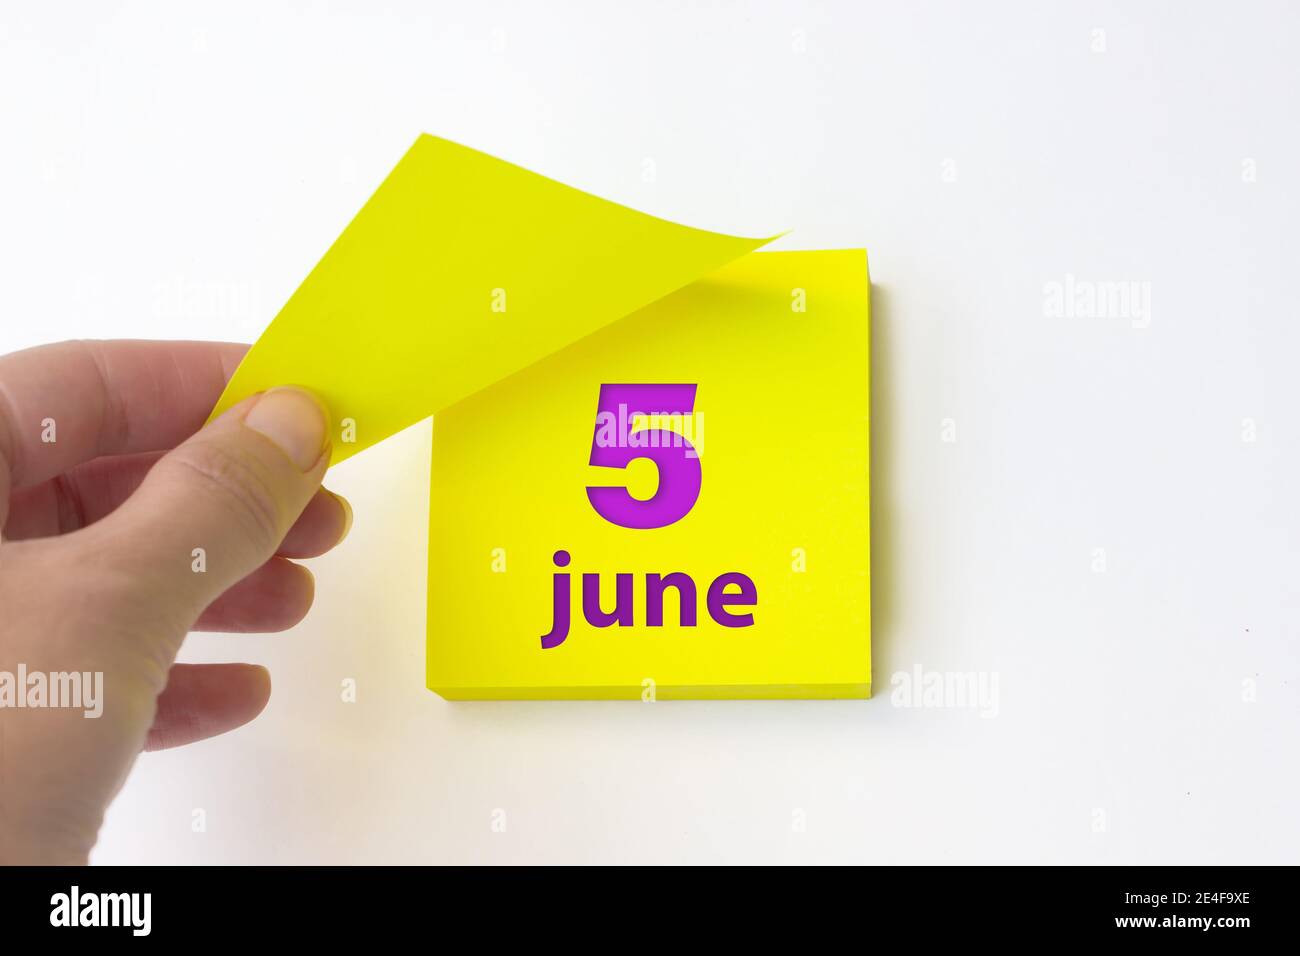 Juni. Tag 5 des Monats, Kalenderdatum. Die Hand reißt das gelbe Blatt des Kalenders ab. Sommer Monat, Tag des Jahres Konzept Stockfoto